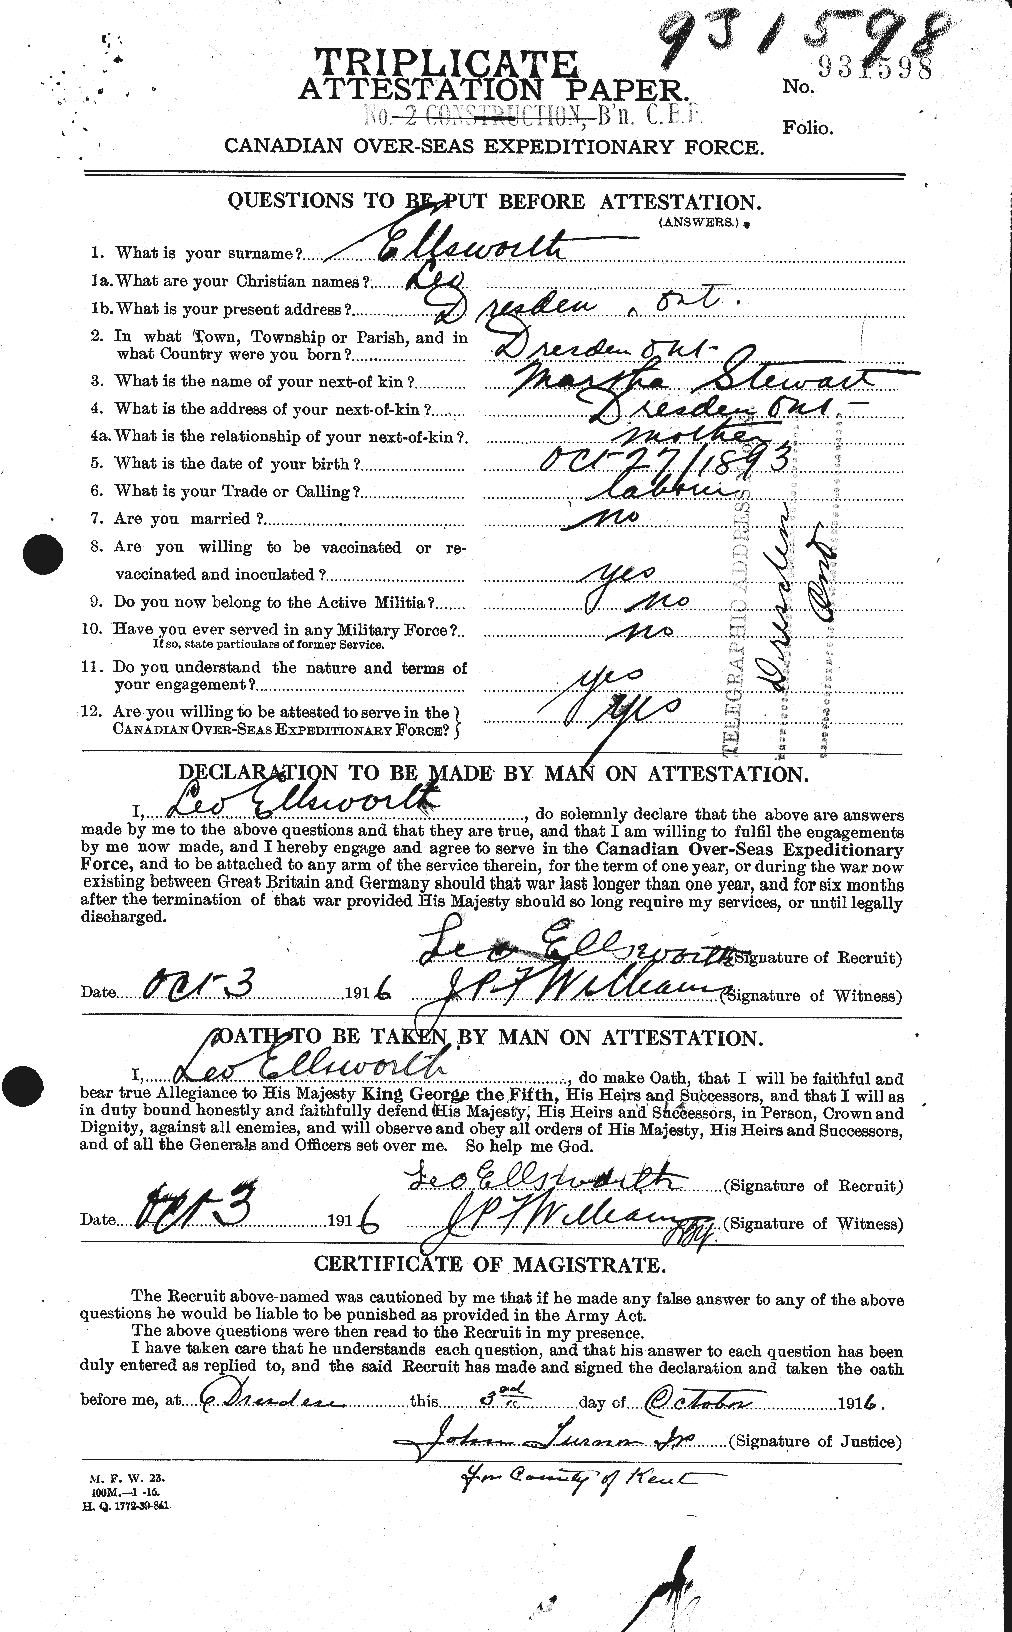 Dossiers du Personnel de la Première Guerre mondiale - CEC 311423a